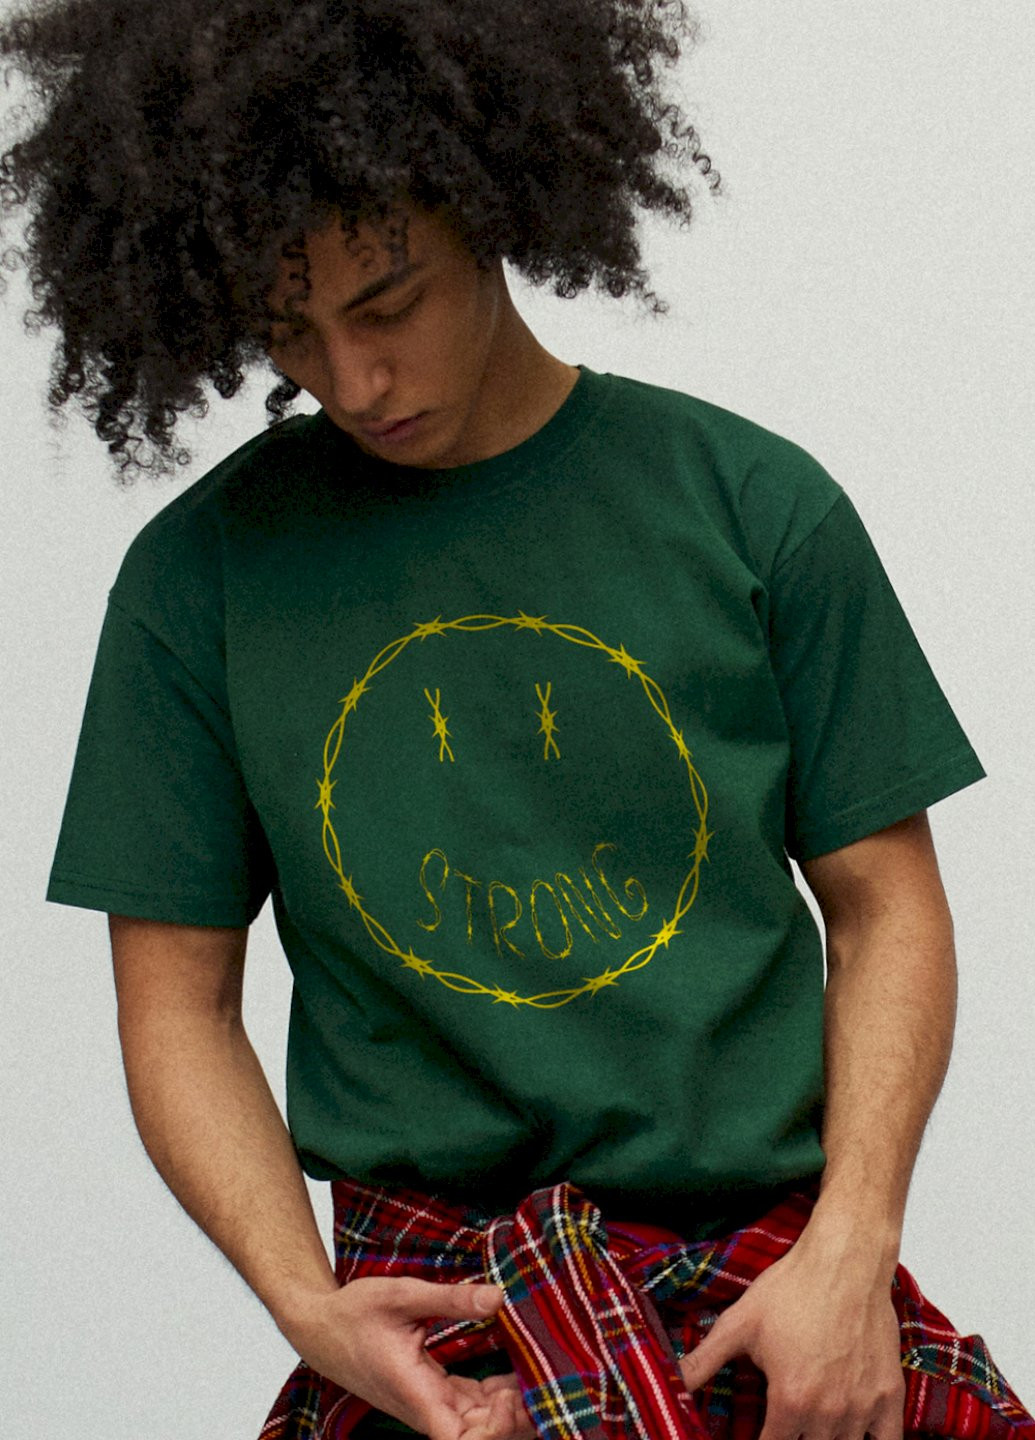 Темно-зеленая футболка мужская YAPPI